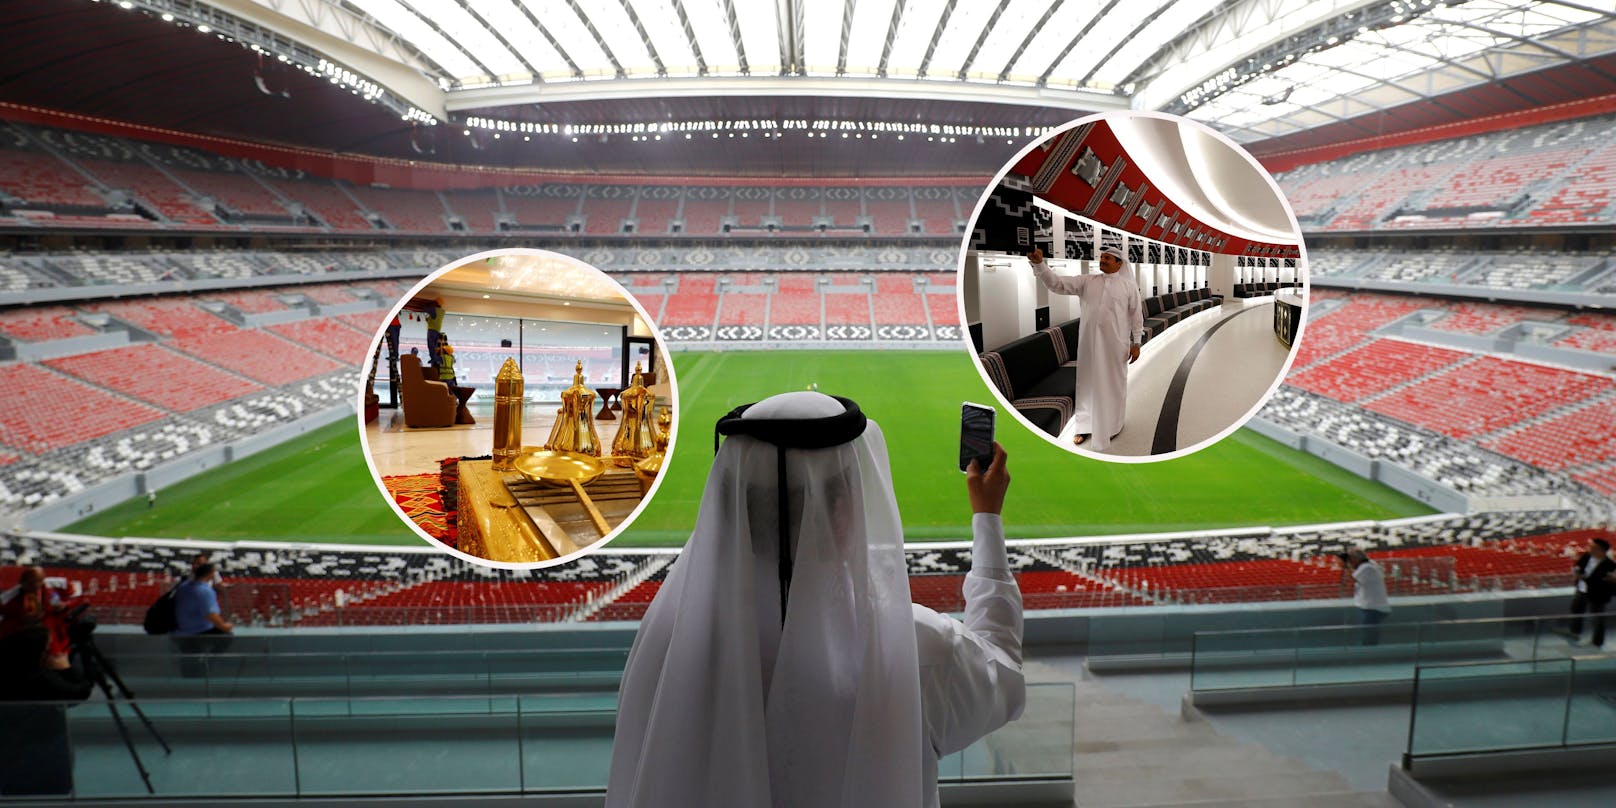 Kurios! Katar reißt Stadion während der WM wieder ab – WM 2022